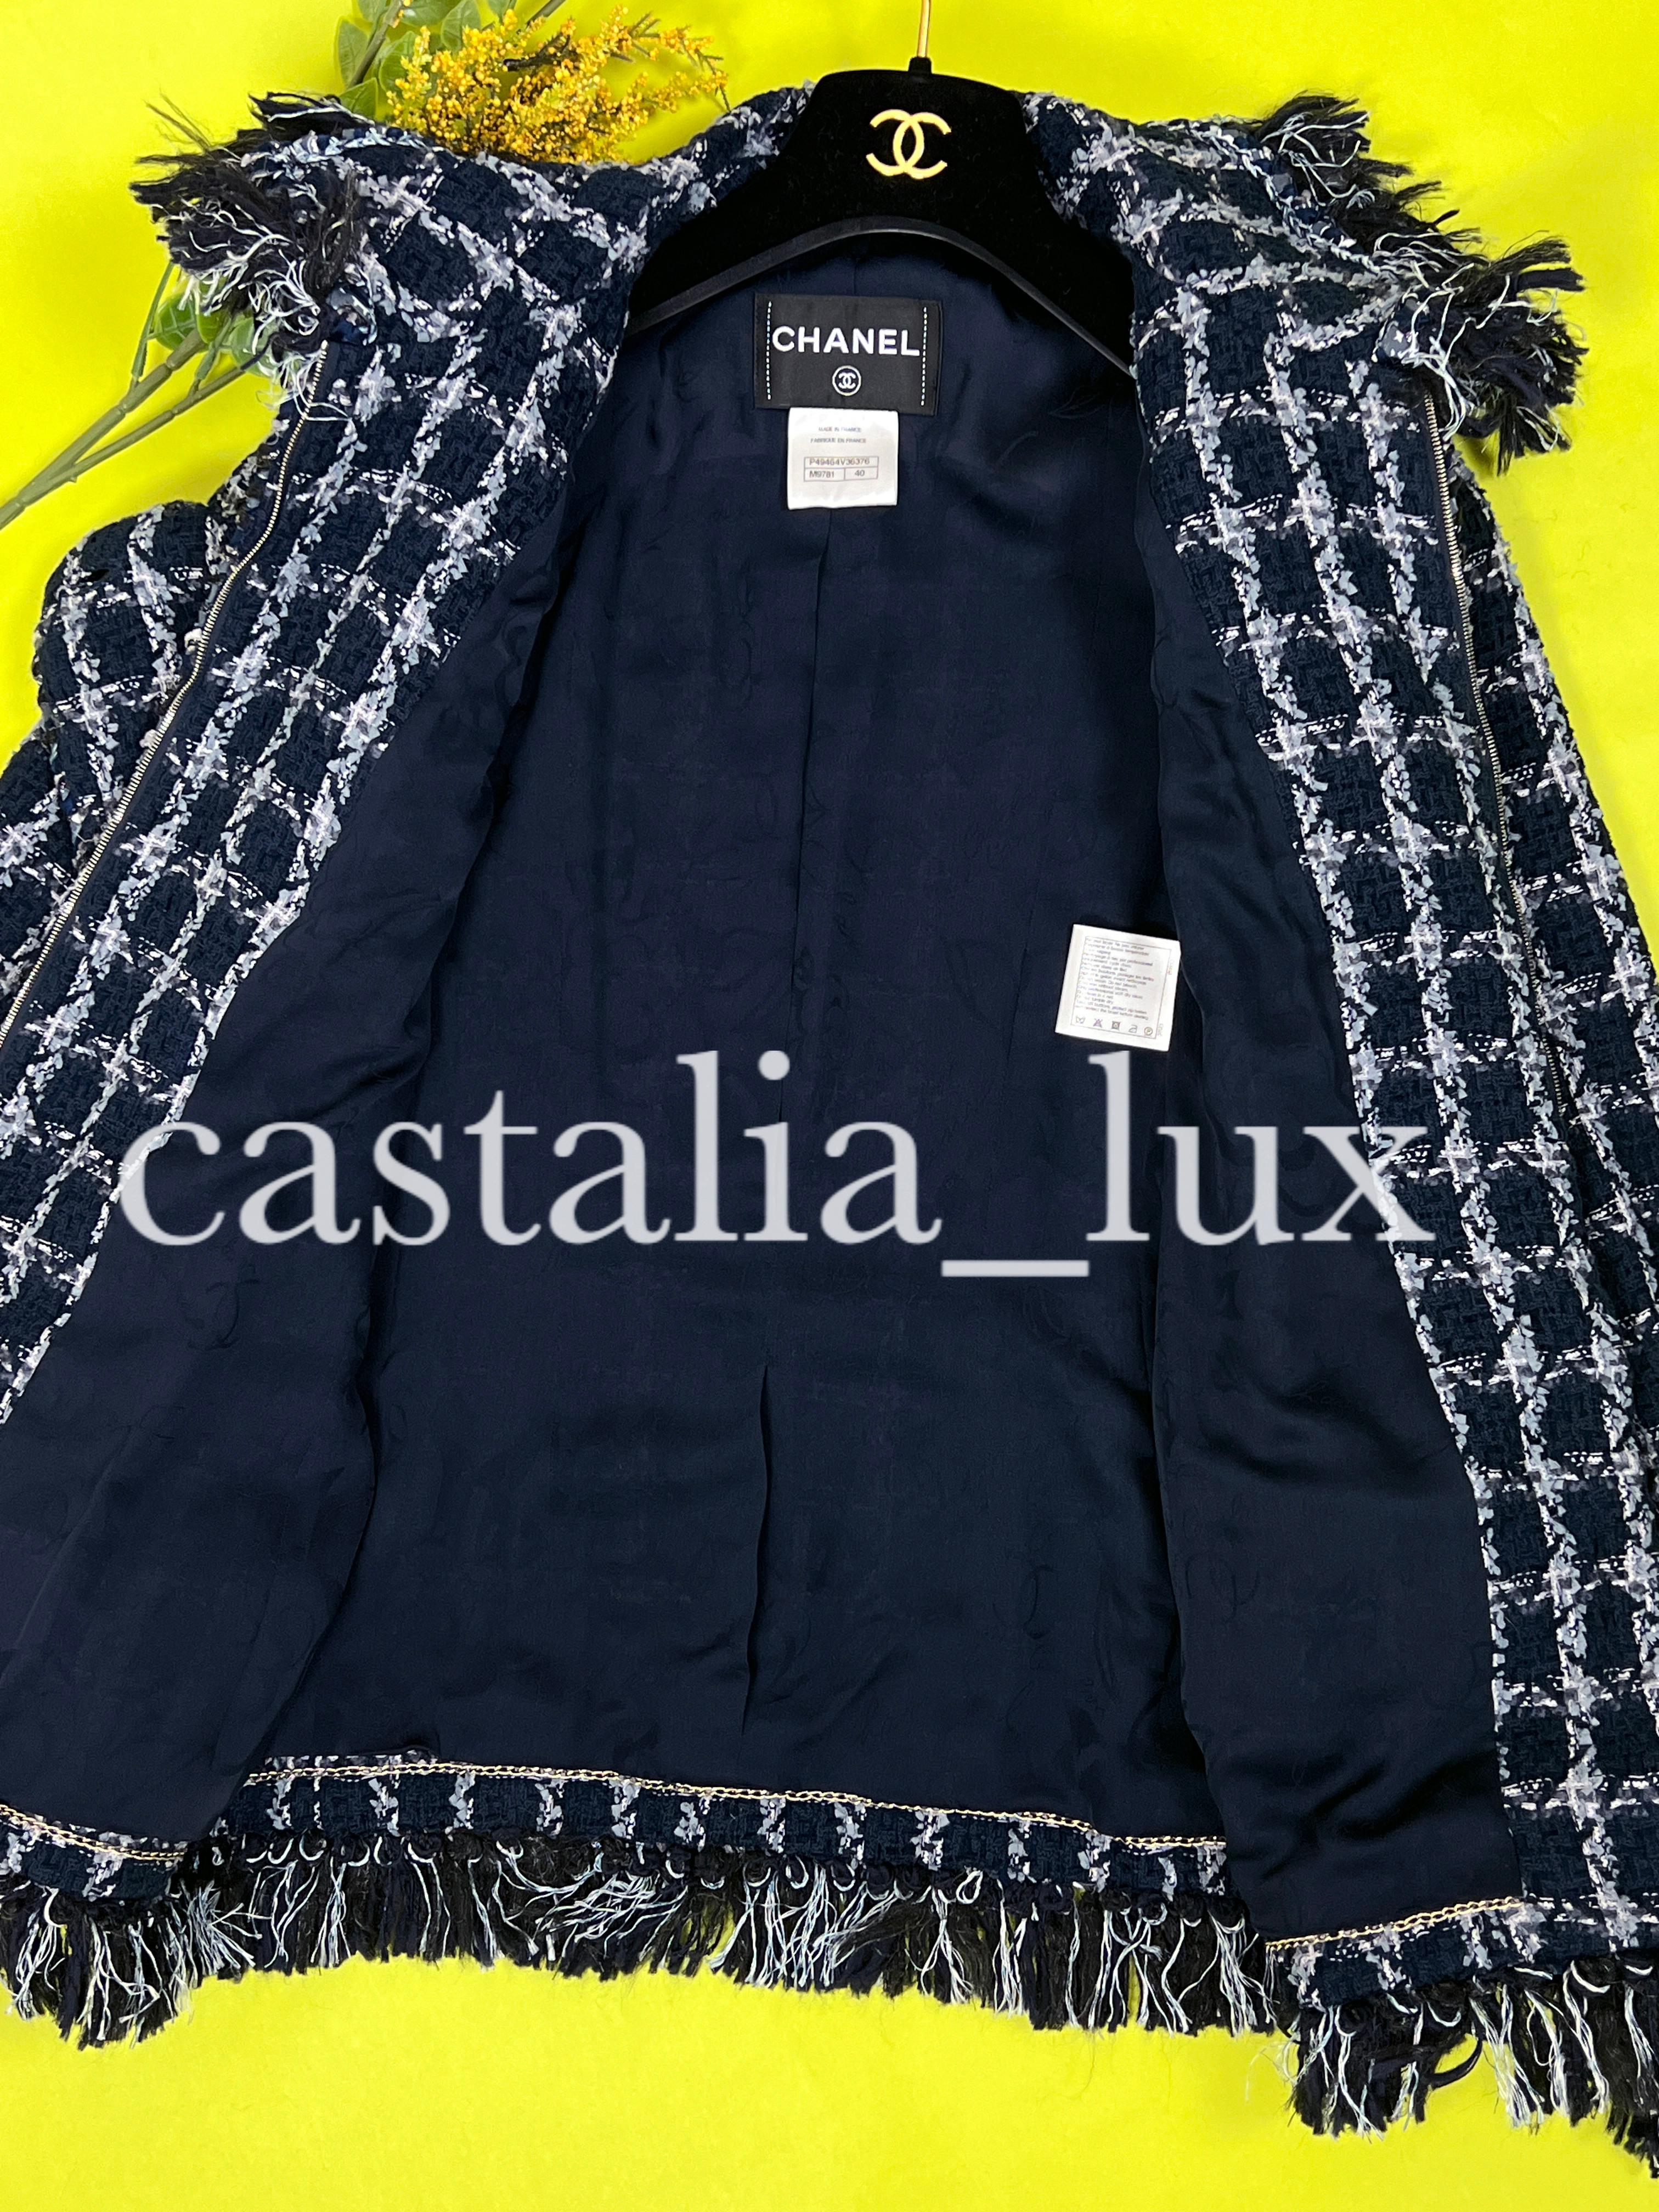 Chanel 11K$ Paris / Dallas Runway Tweed Jacket For Sale 5